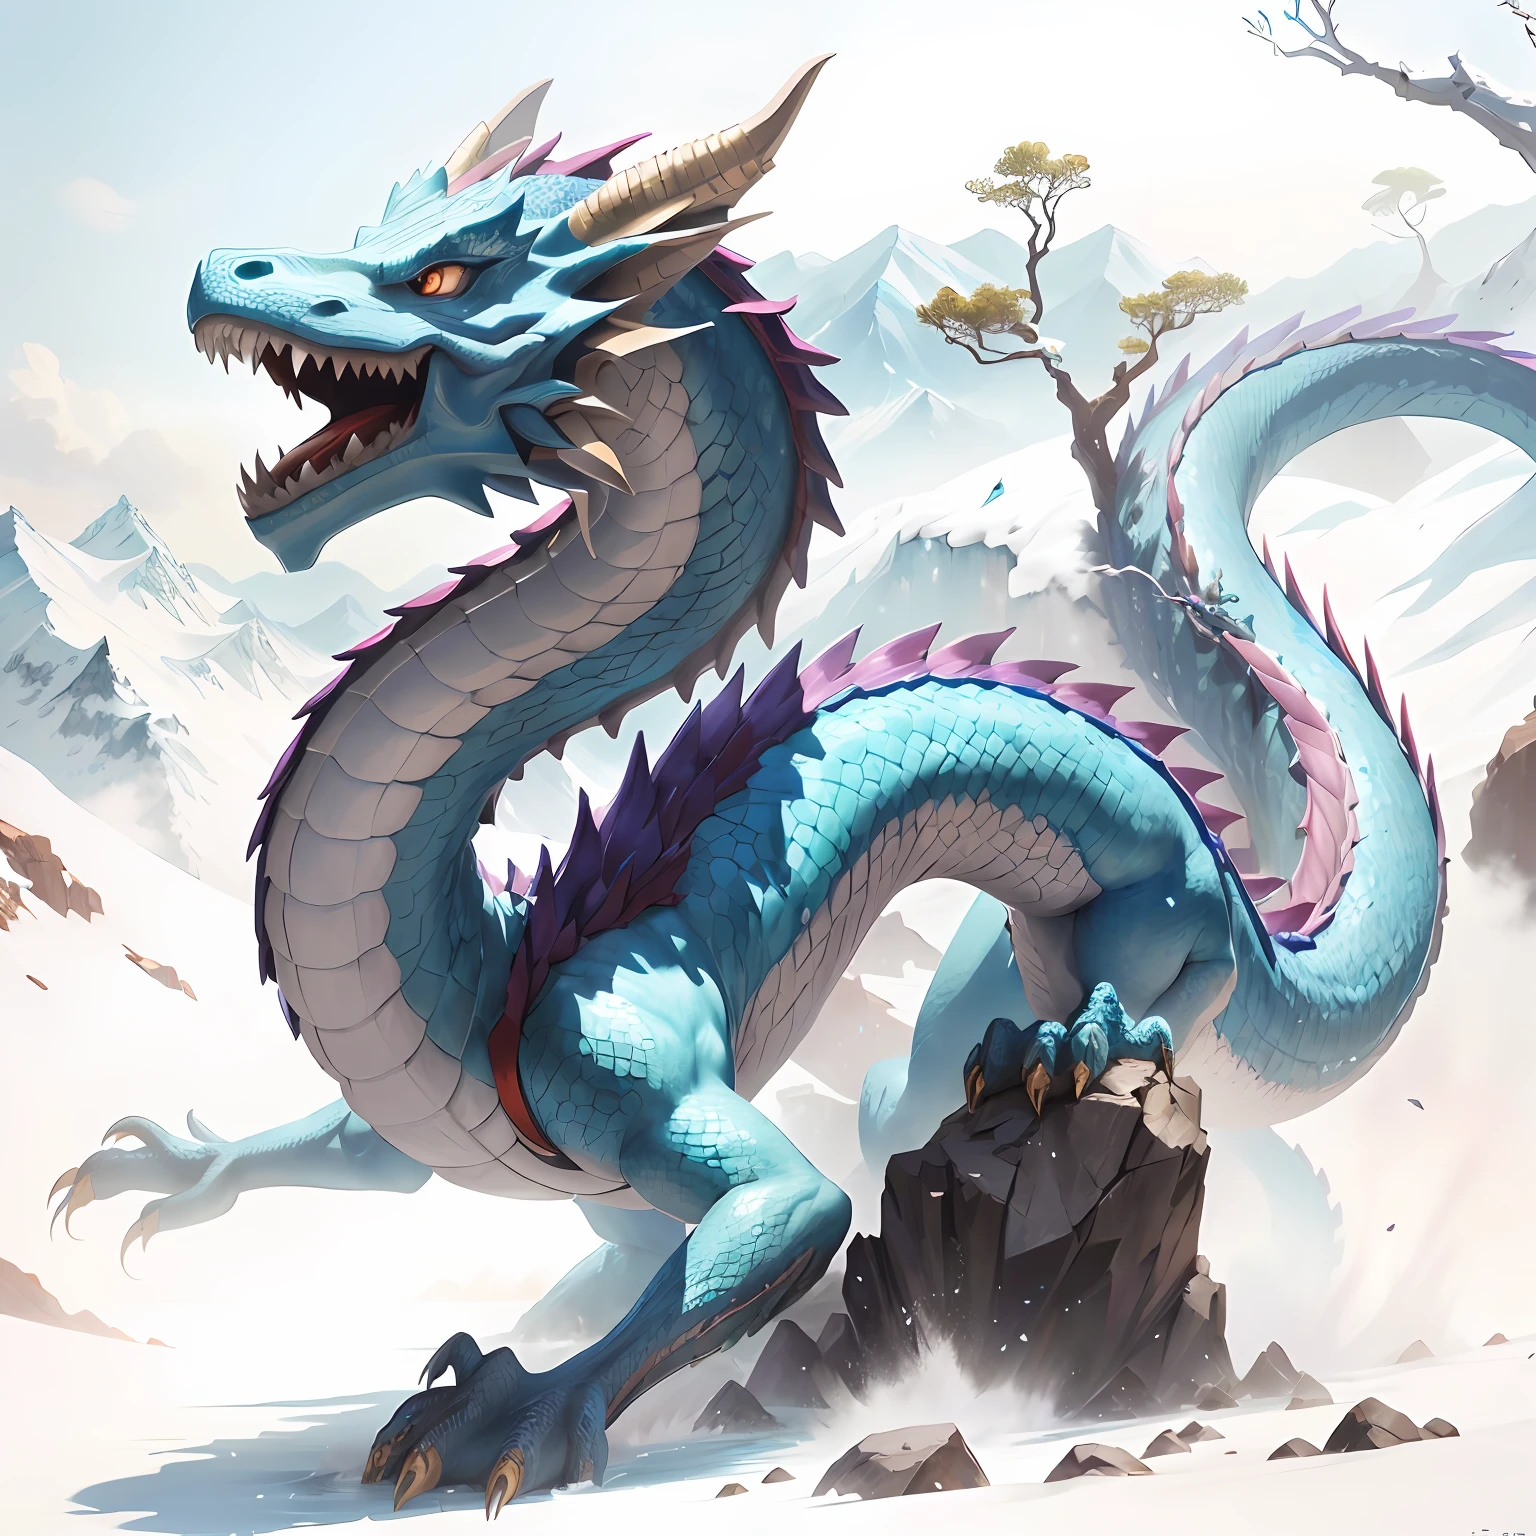 Há um dragão azul parado na rocha, fantasia de dragão chinês ciano, Dragão azul, Frost Dragão, arte conceitual do dragão chinês, dragão escamoso azul, Dragão Art, Legendary Dragão, D&d comissão arte dragão, dragão chinês suave, Dragão, dragão épico, Dragão de Água, dragão longo, oil painting de dragon, bebido, Um majestoso，Um dragão， colorida， picos de montanhas， cachoeira， Bai Yun， obra-prima， Melhor qualidade na melhor das hipóteses， O é muito detalhado， finamente detalhado， defcial art， Papel de parede da unidade 8k， 4K，8K，Ultra HD， altamente detalhado， bborrãory， borrãory_Fundo， borrãory_primeiro plano，profundidade_de_Campo，movimento_borrão，（realisticamente，fotorrealista：1），O dragão dourado，escamas azuis， --auto